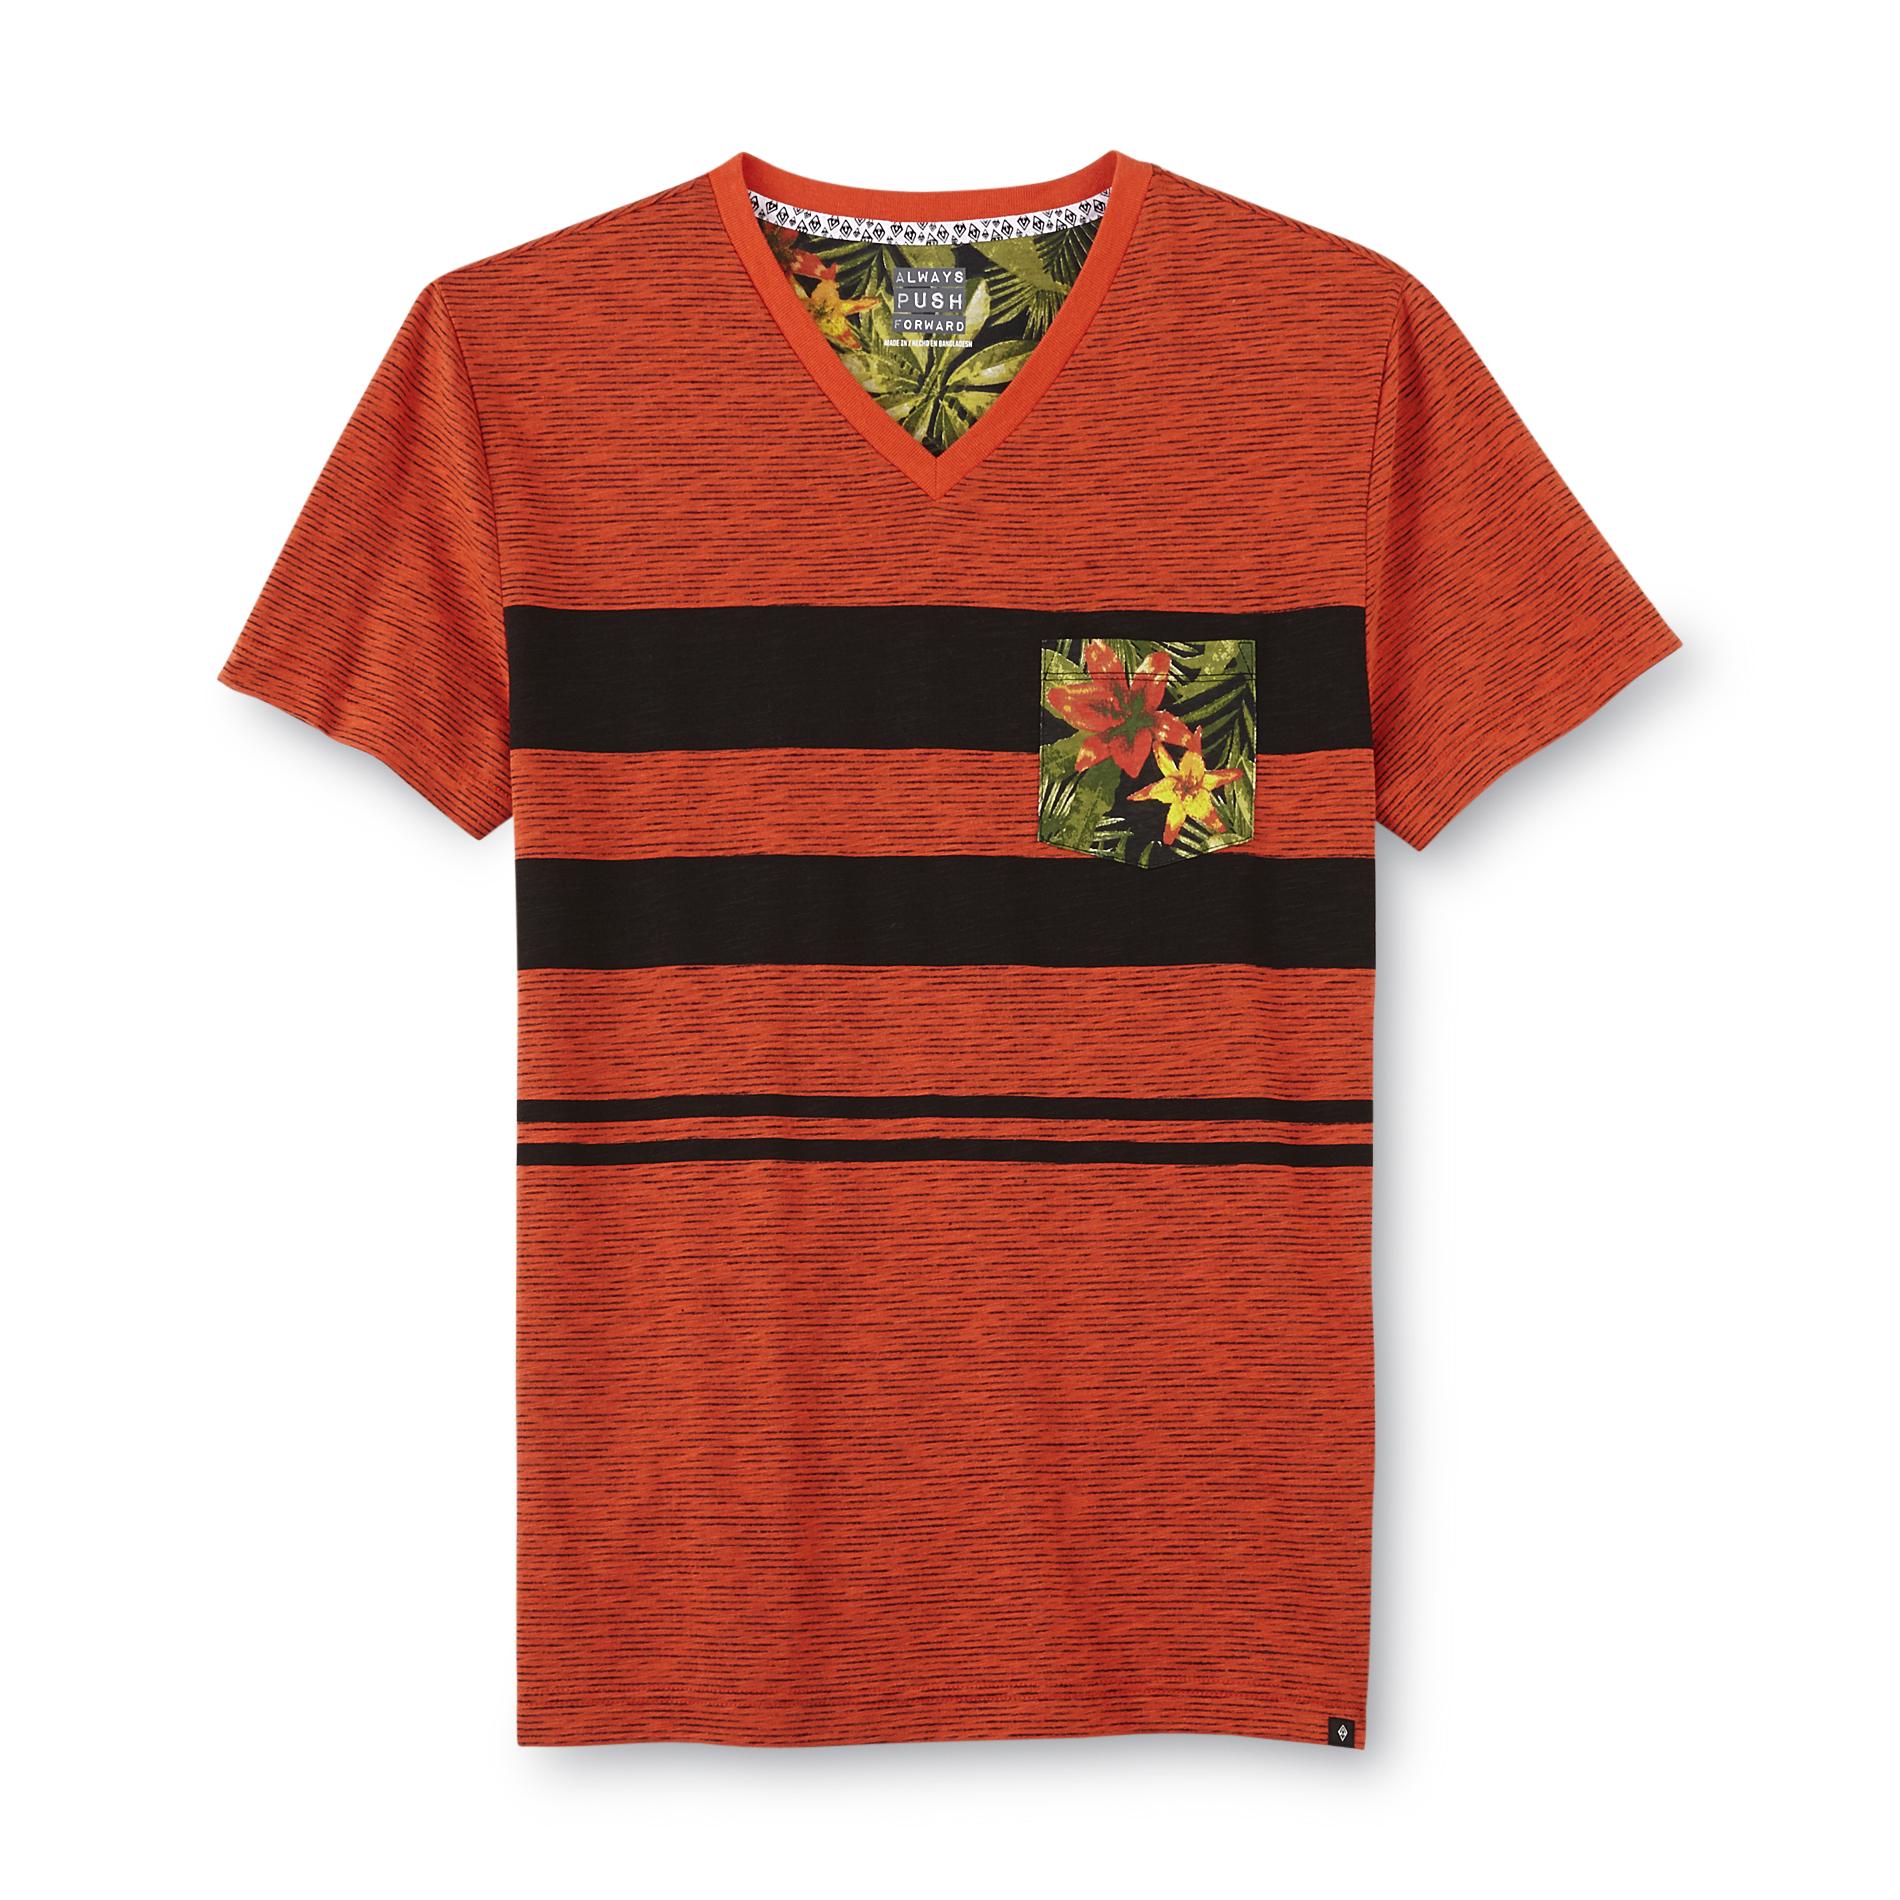 Always Push Forward Men's V-Neck Pocket T-Shirt - Striped Floral Print